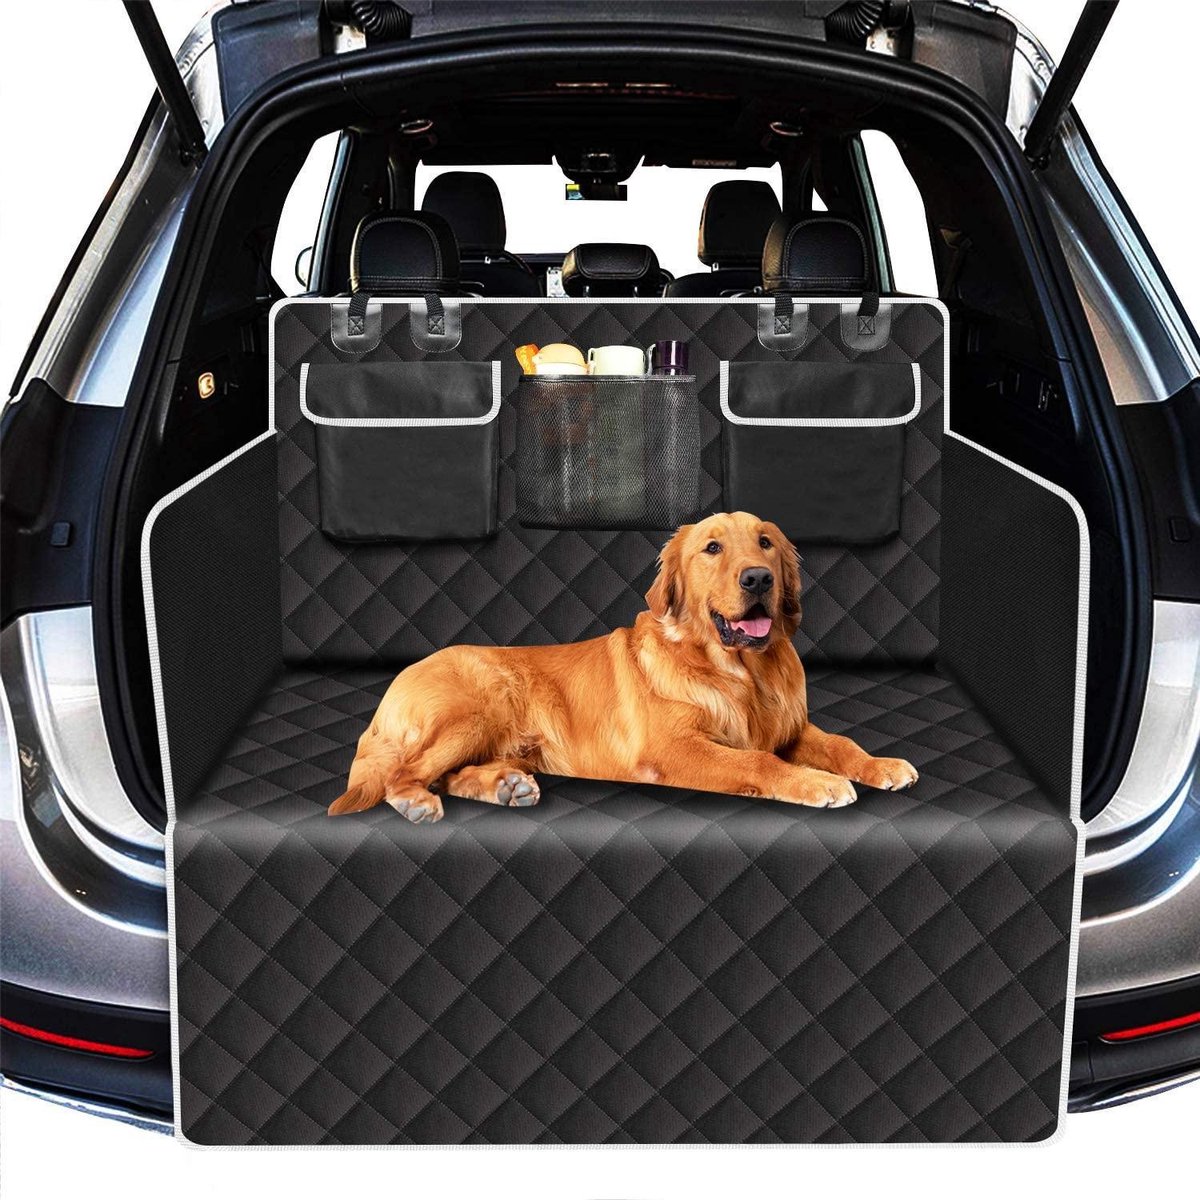 Kofferbakbeschermer voor hond, scheurvast en waterdicht, antislip wasbare achterbankhoes voor honden met zijbescherming universeel voor auto, stationwagen, vrachtwagens, SUV (Zwart)